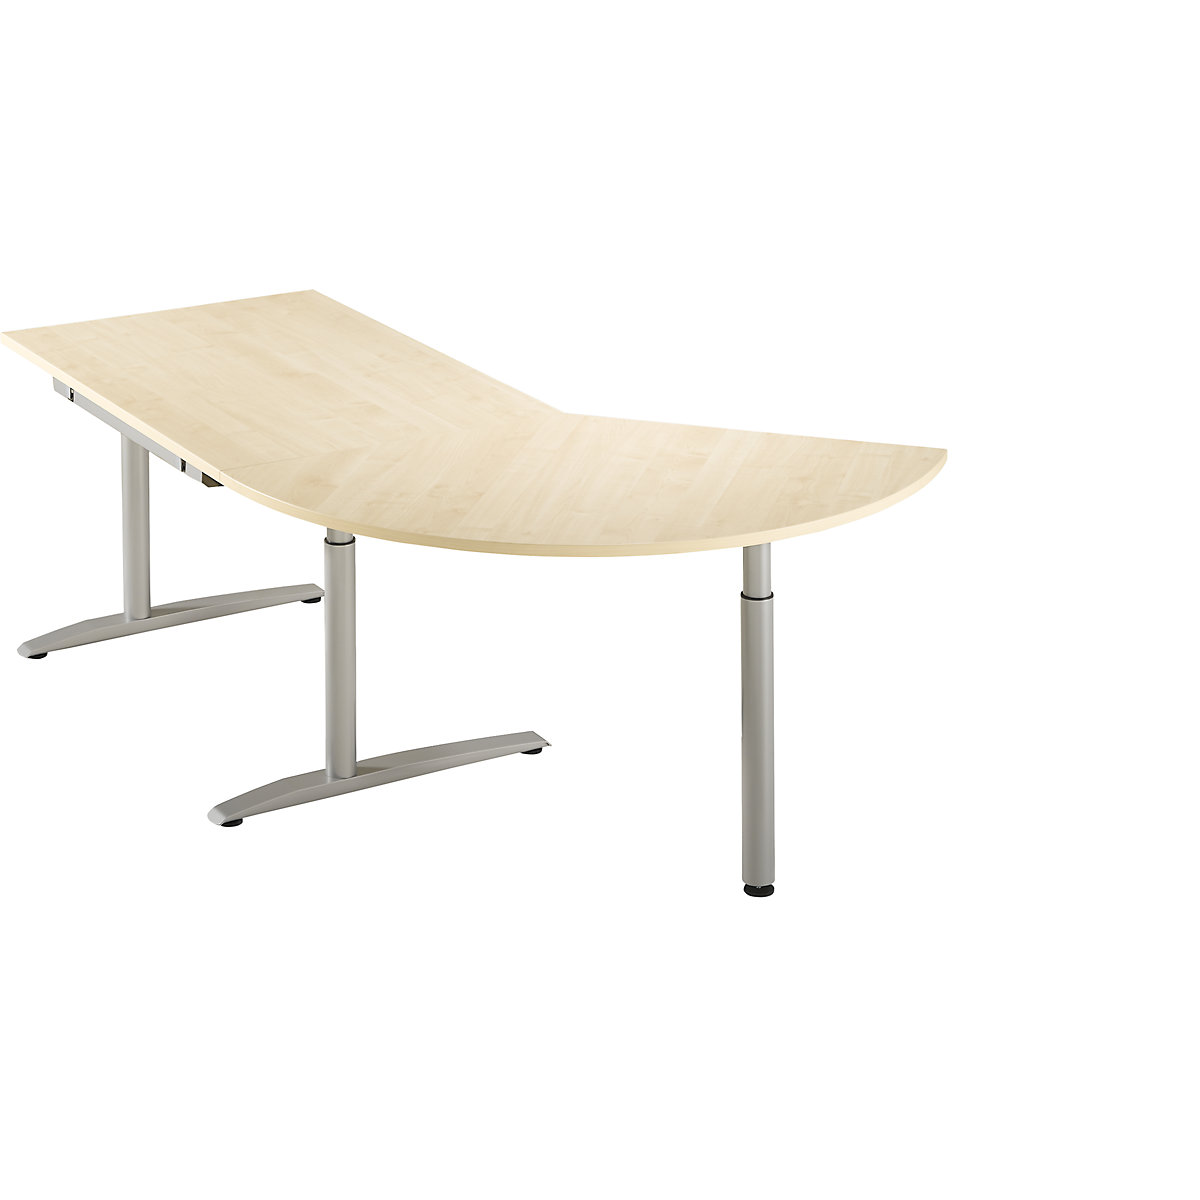 Priključni stol, namještanje visine 650 – 850 mm HANNA, 3/8 kruga, s potpornom nogom, imitacija javora-5